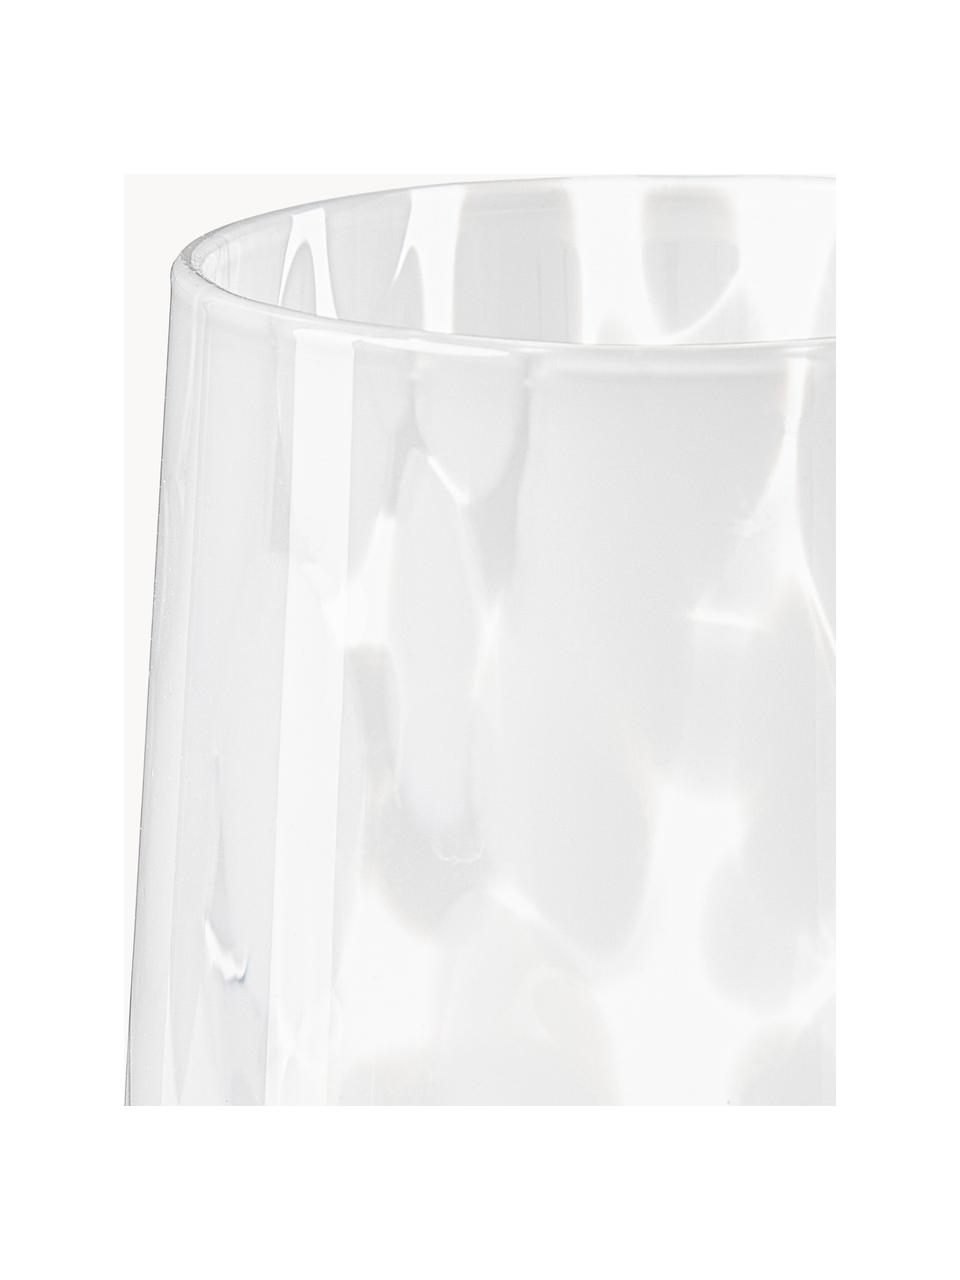 Handgemachte Wassergläser Oakley mit Tupfen-Muster, 4 Stück, Glas, Weiss, Transparent, Ø 9 x H 10 cm, 370 ml